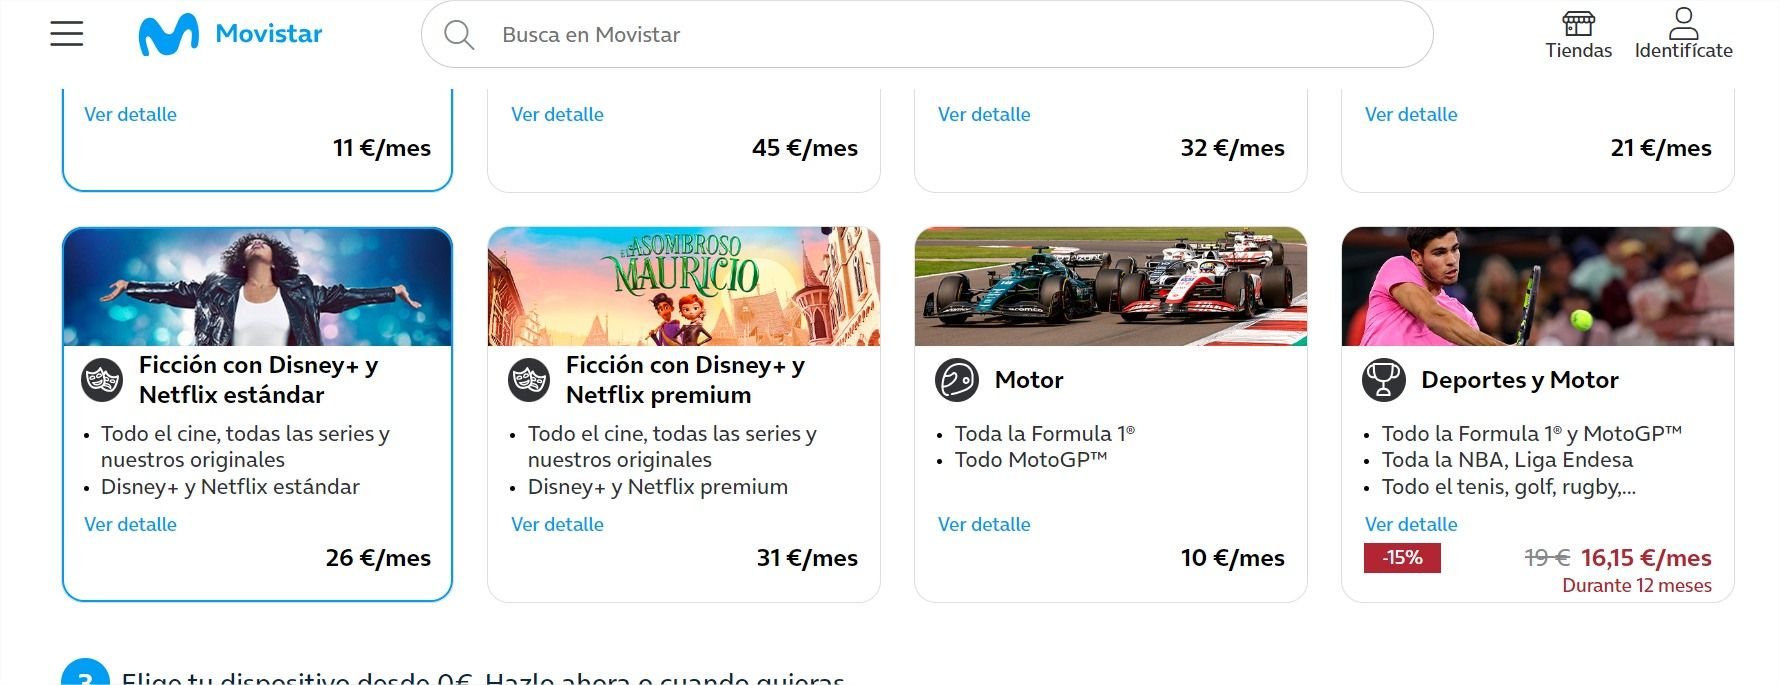 ¿Movistar  también ofrece Disney+ gratis?